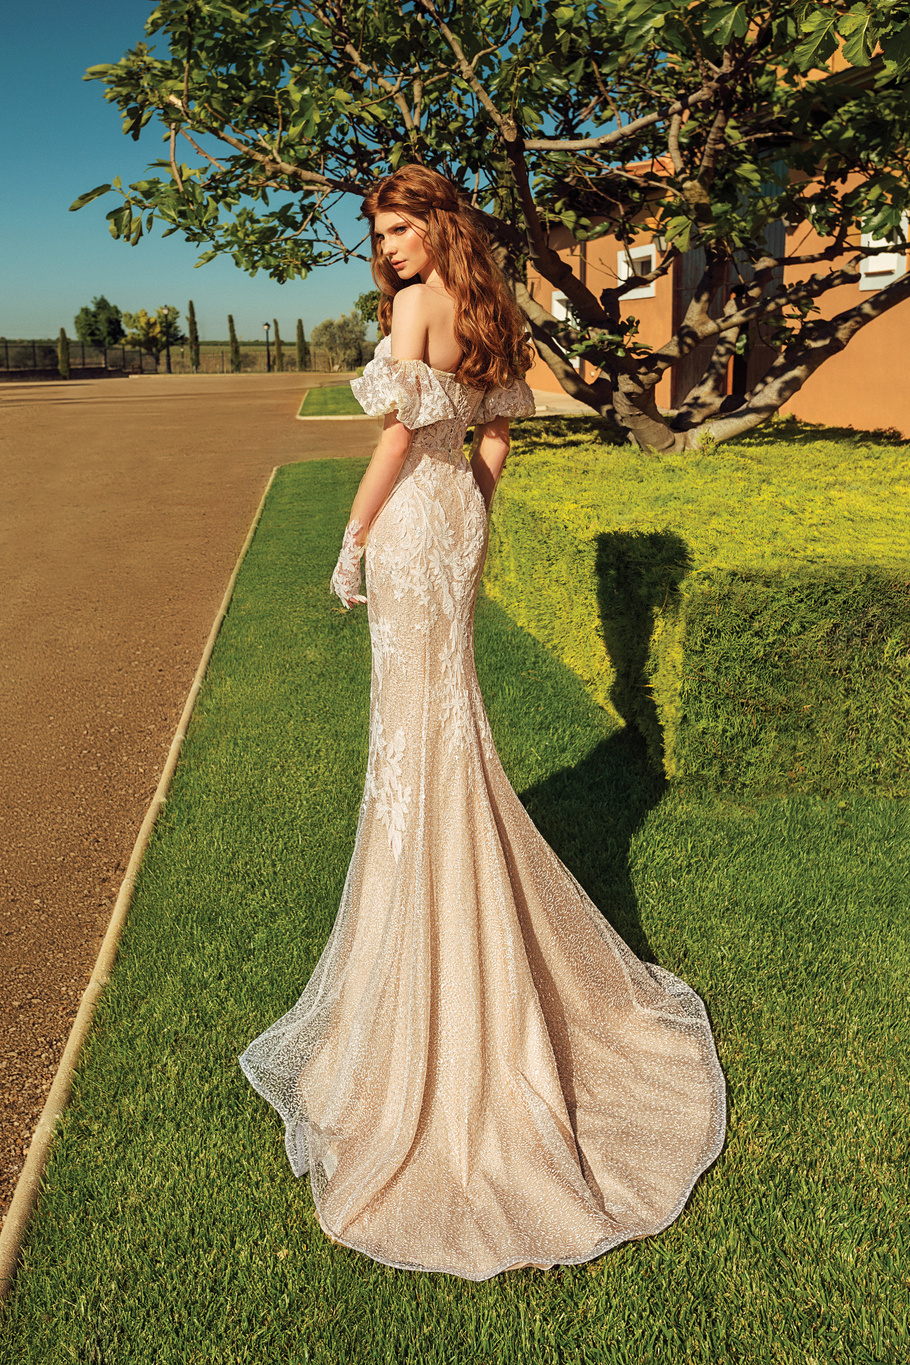 Купить свадебное платье «Виана» Татьяны Каплун из коллекции «Вайлд Винд 2019» в интернет-магазине